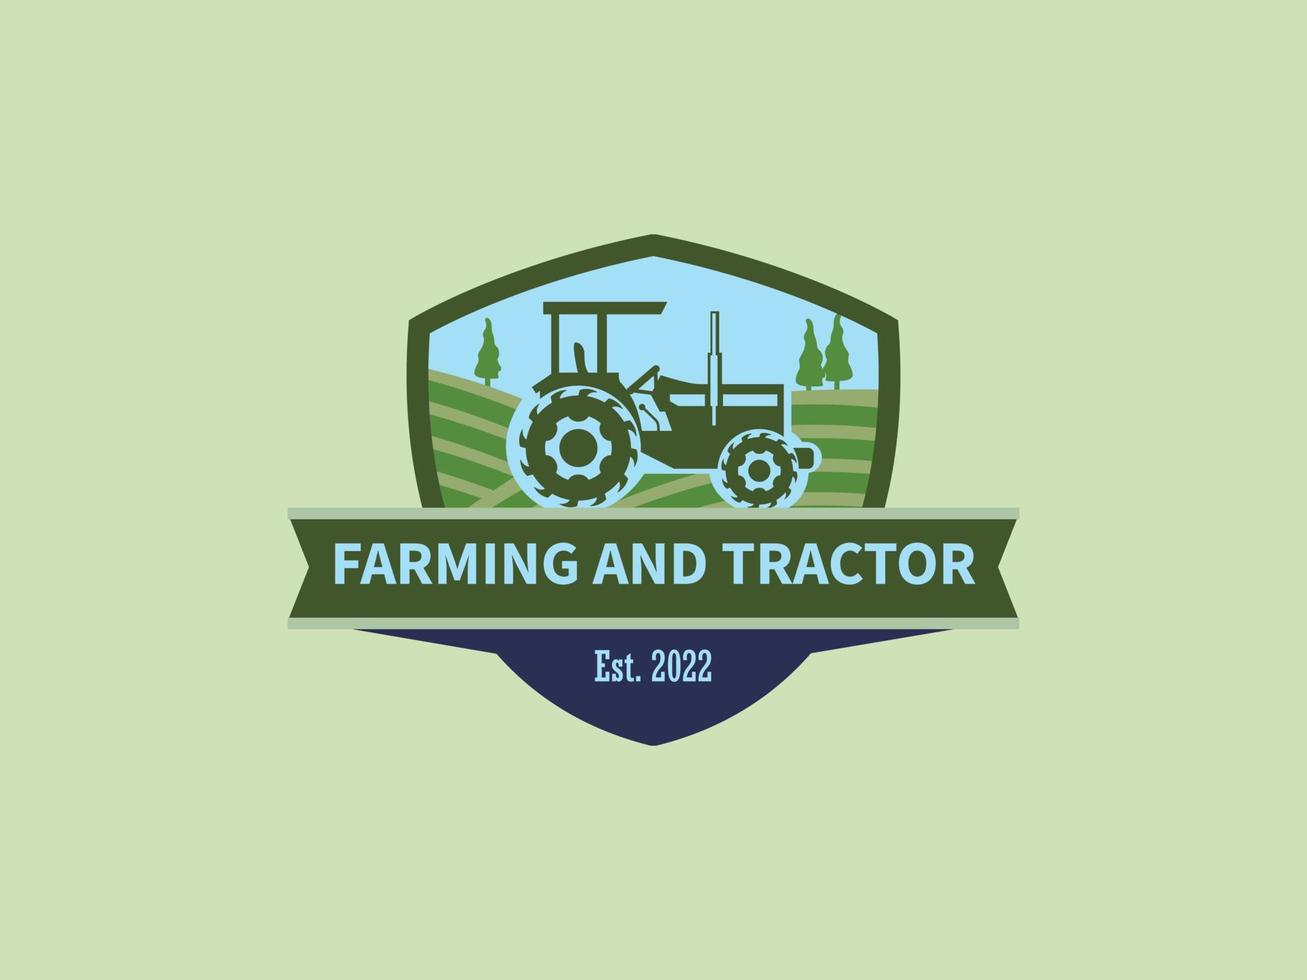 trator em um logotipo de fazenda vetor